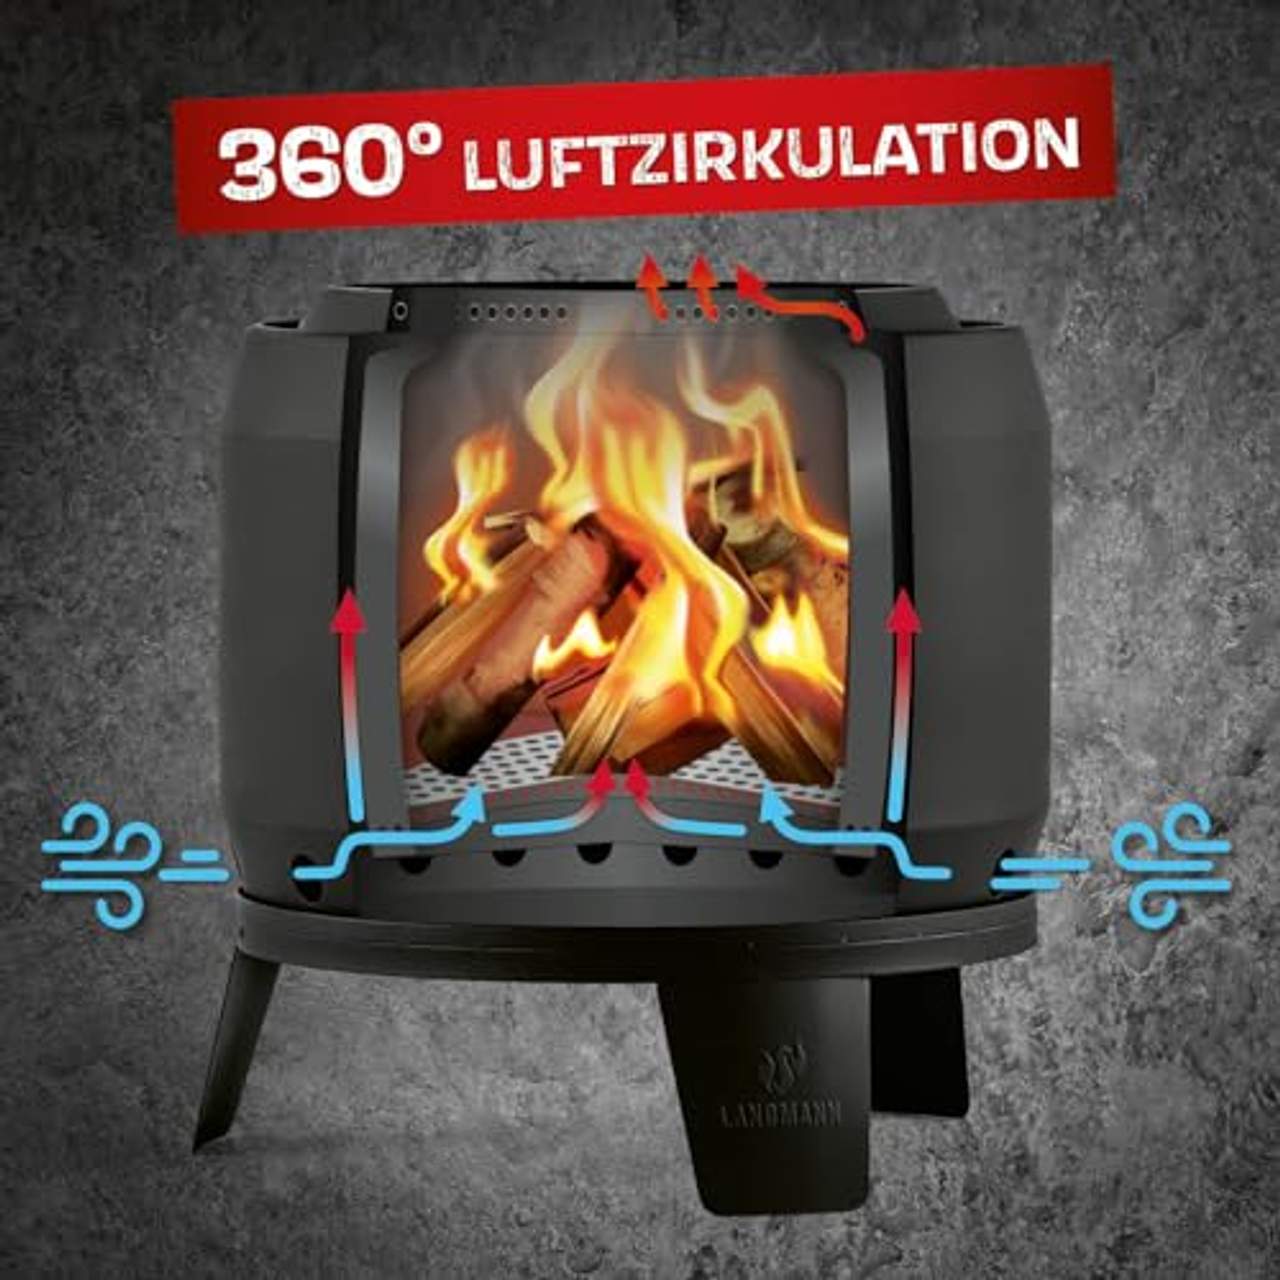 Landmann Rauchfreier Feuerkorb Gross 360° Luftzirkulation